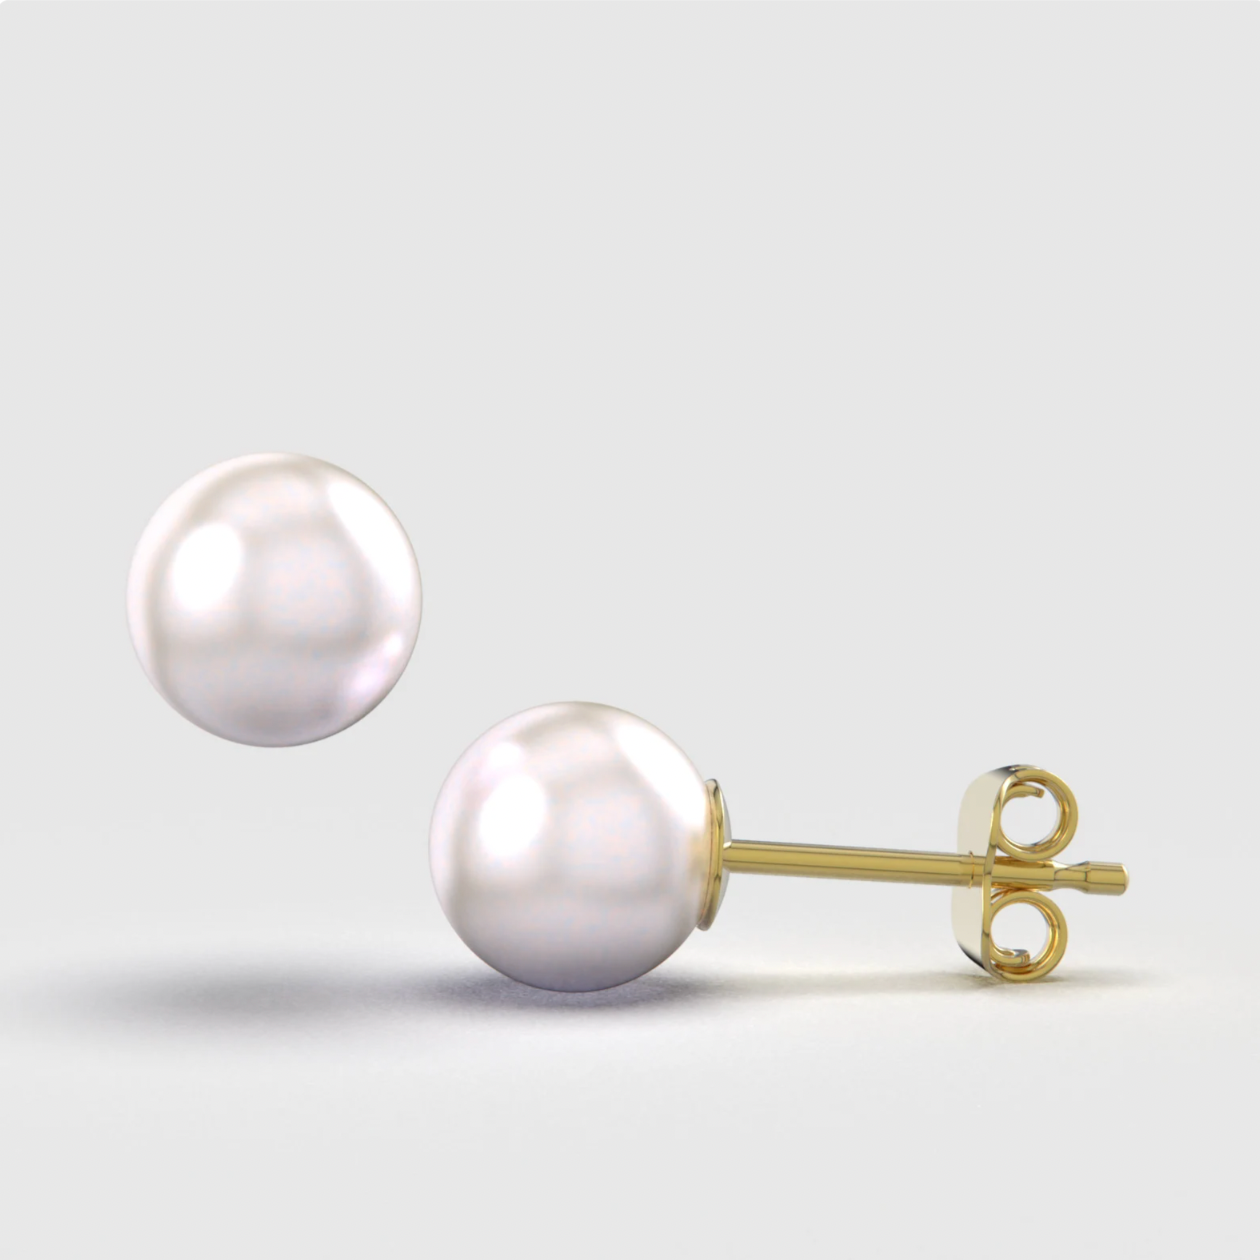 Genuine Pearl Stud Earrings 14K Gold Earrings - BEYOND